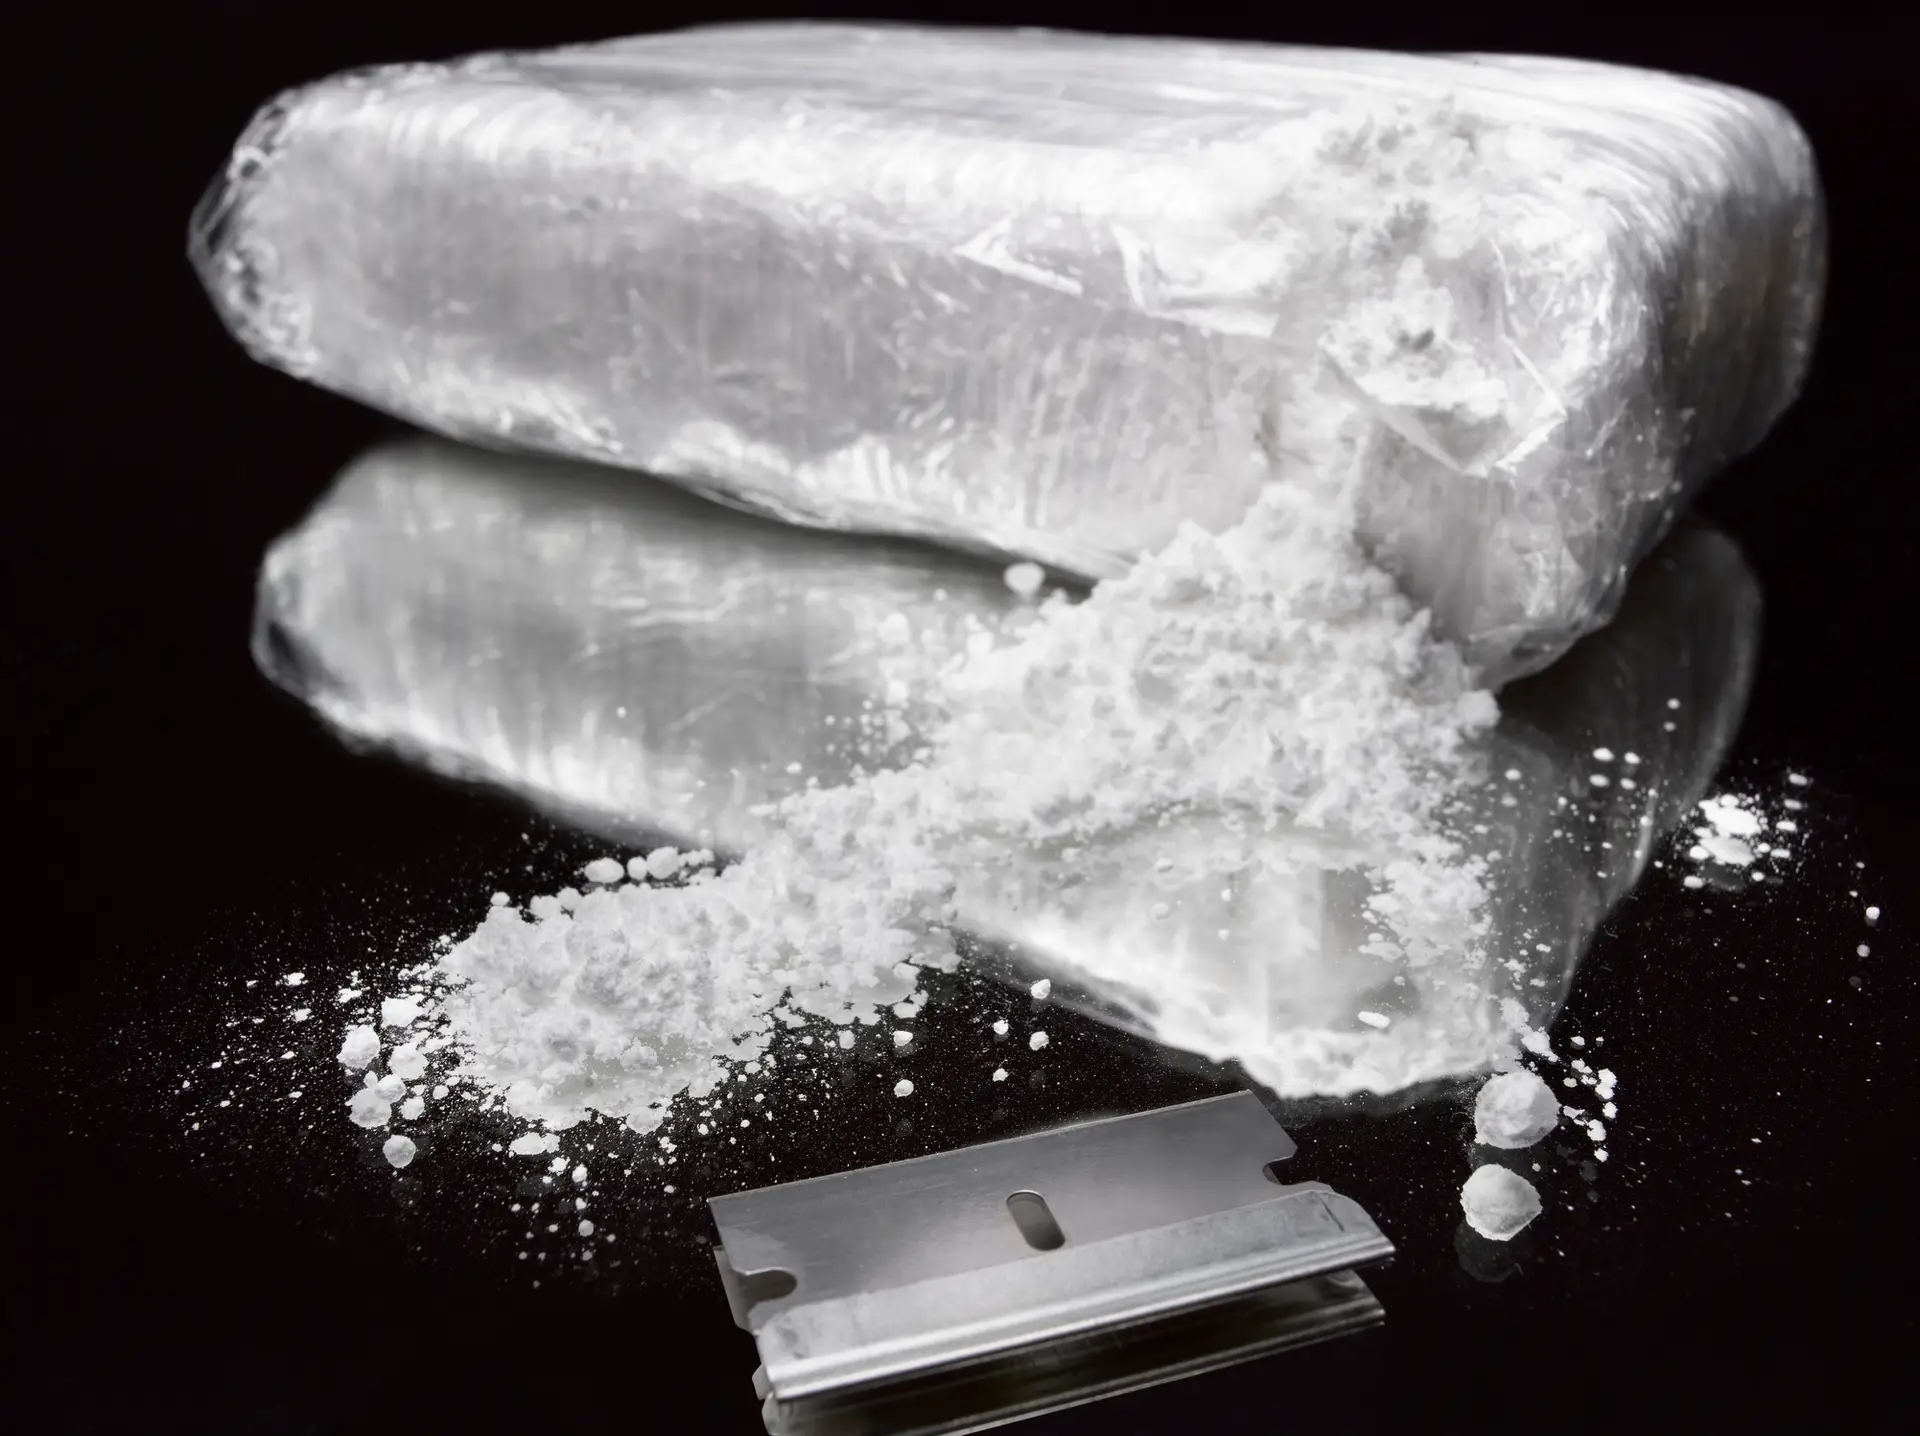 PJ apreende 41 mil doses de cocaína, 11 mil das quais no interior de um cadáver